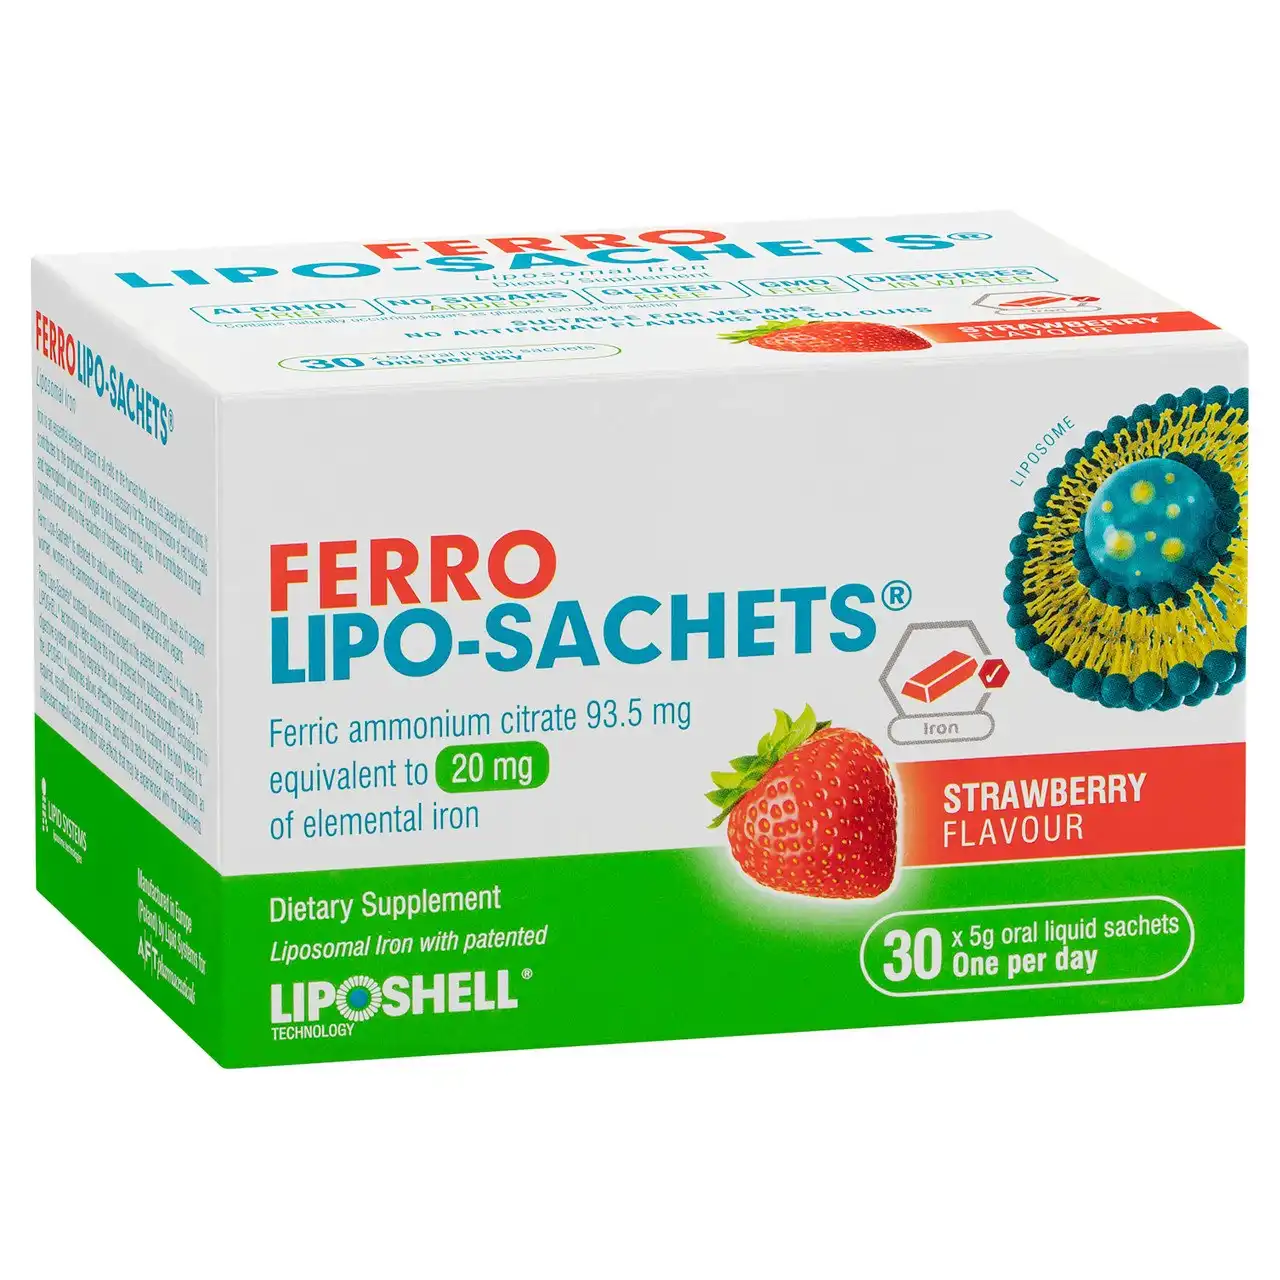 Ferro Lipo-Sachets(R) Strawberry Flavour 30 Sachets x 5g